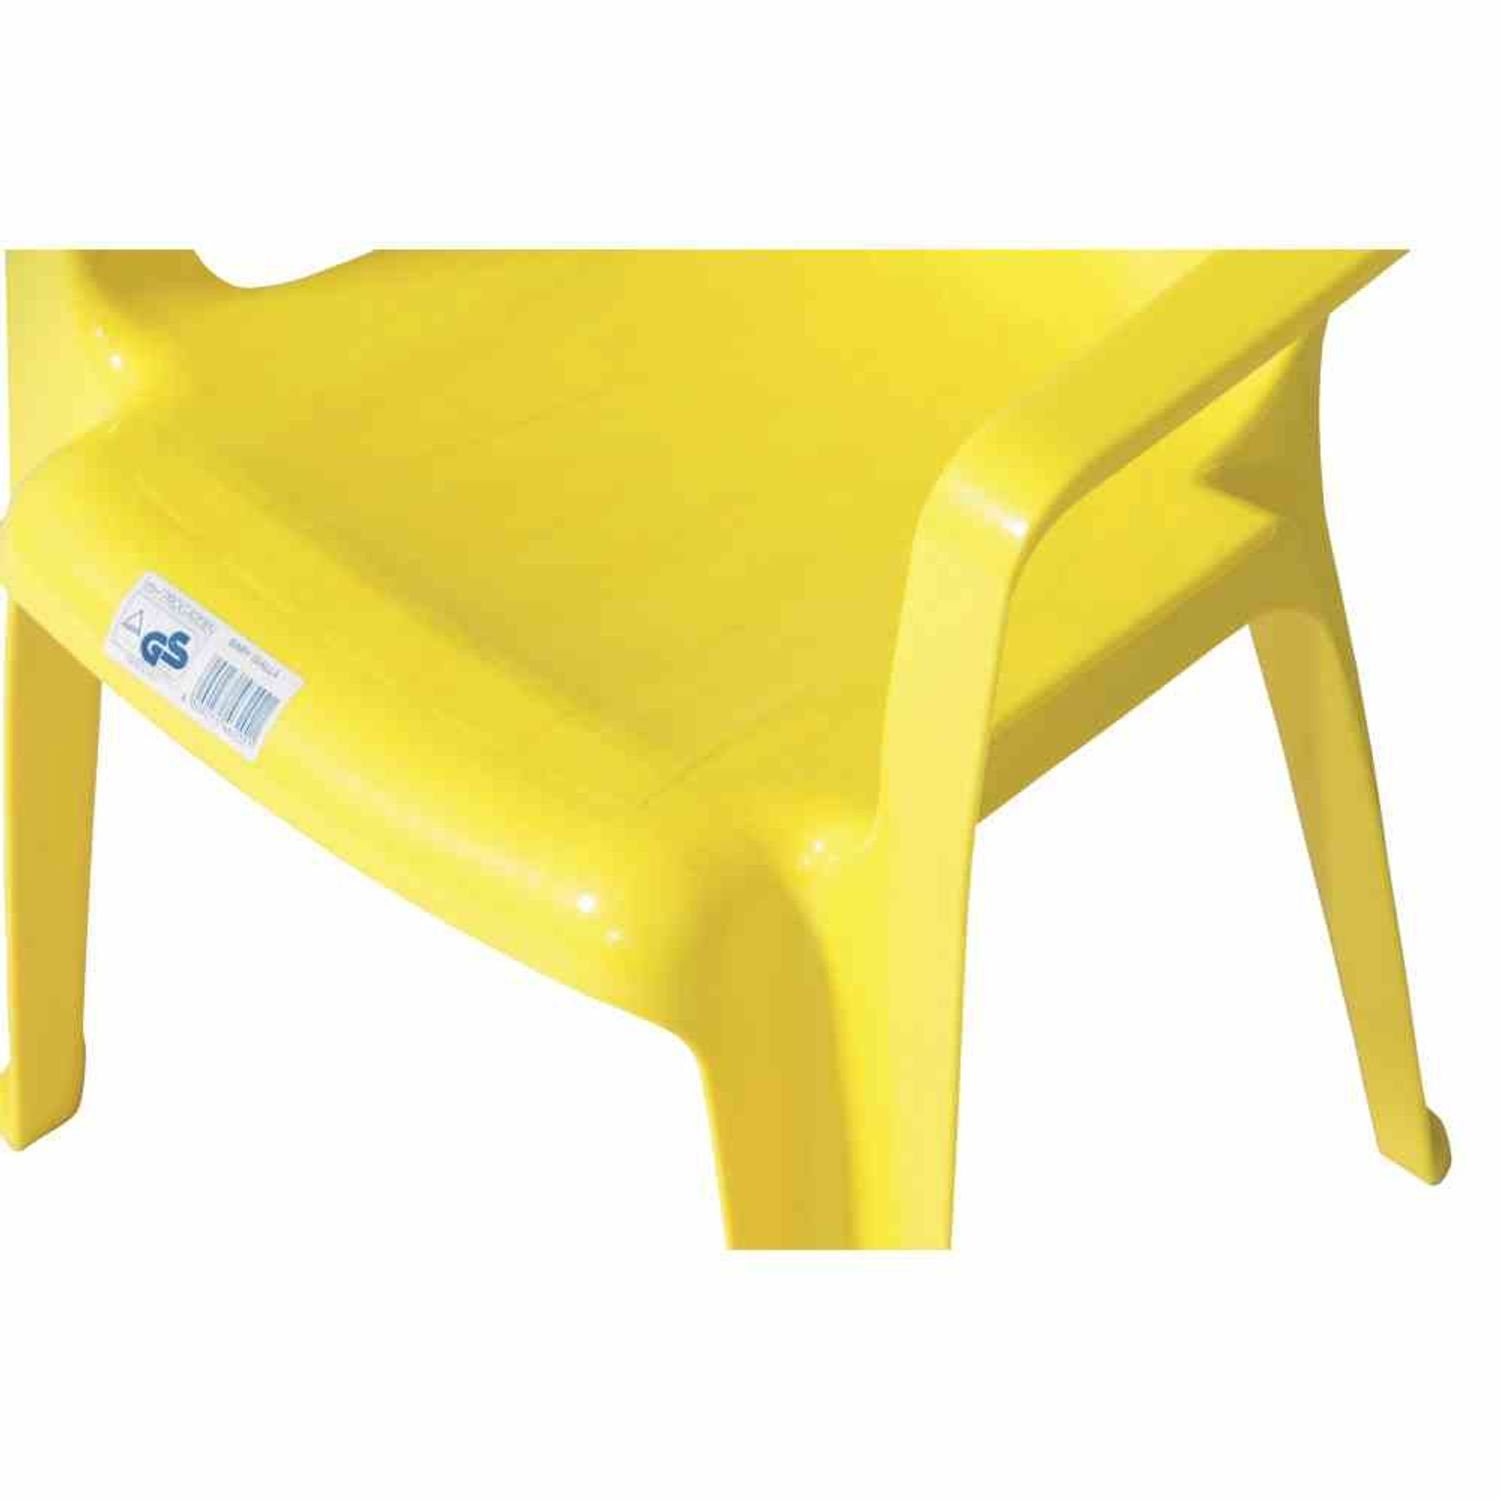 Kinderstuhl Monoblock, gelb Ipae-Progarden Vollkunststoff, Kinderstuhl, stapelbar